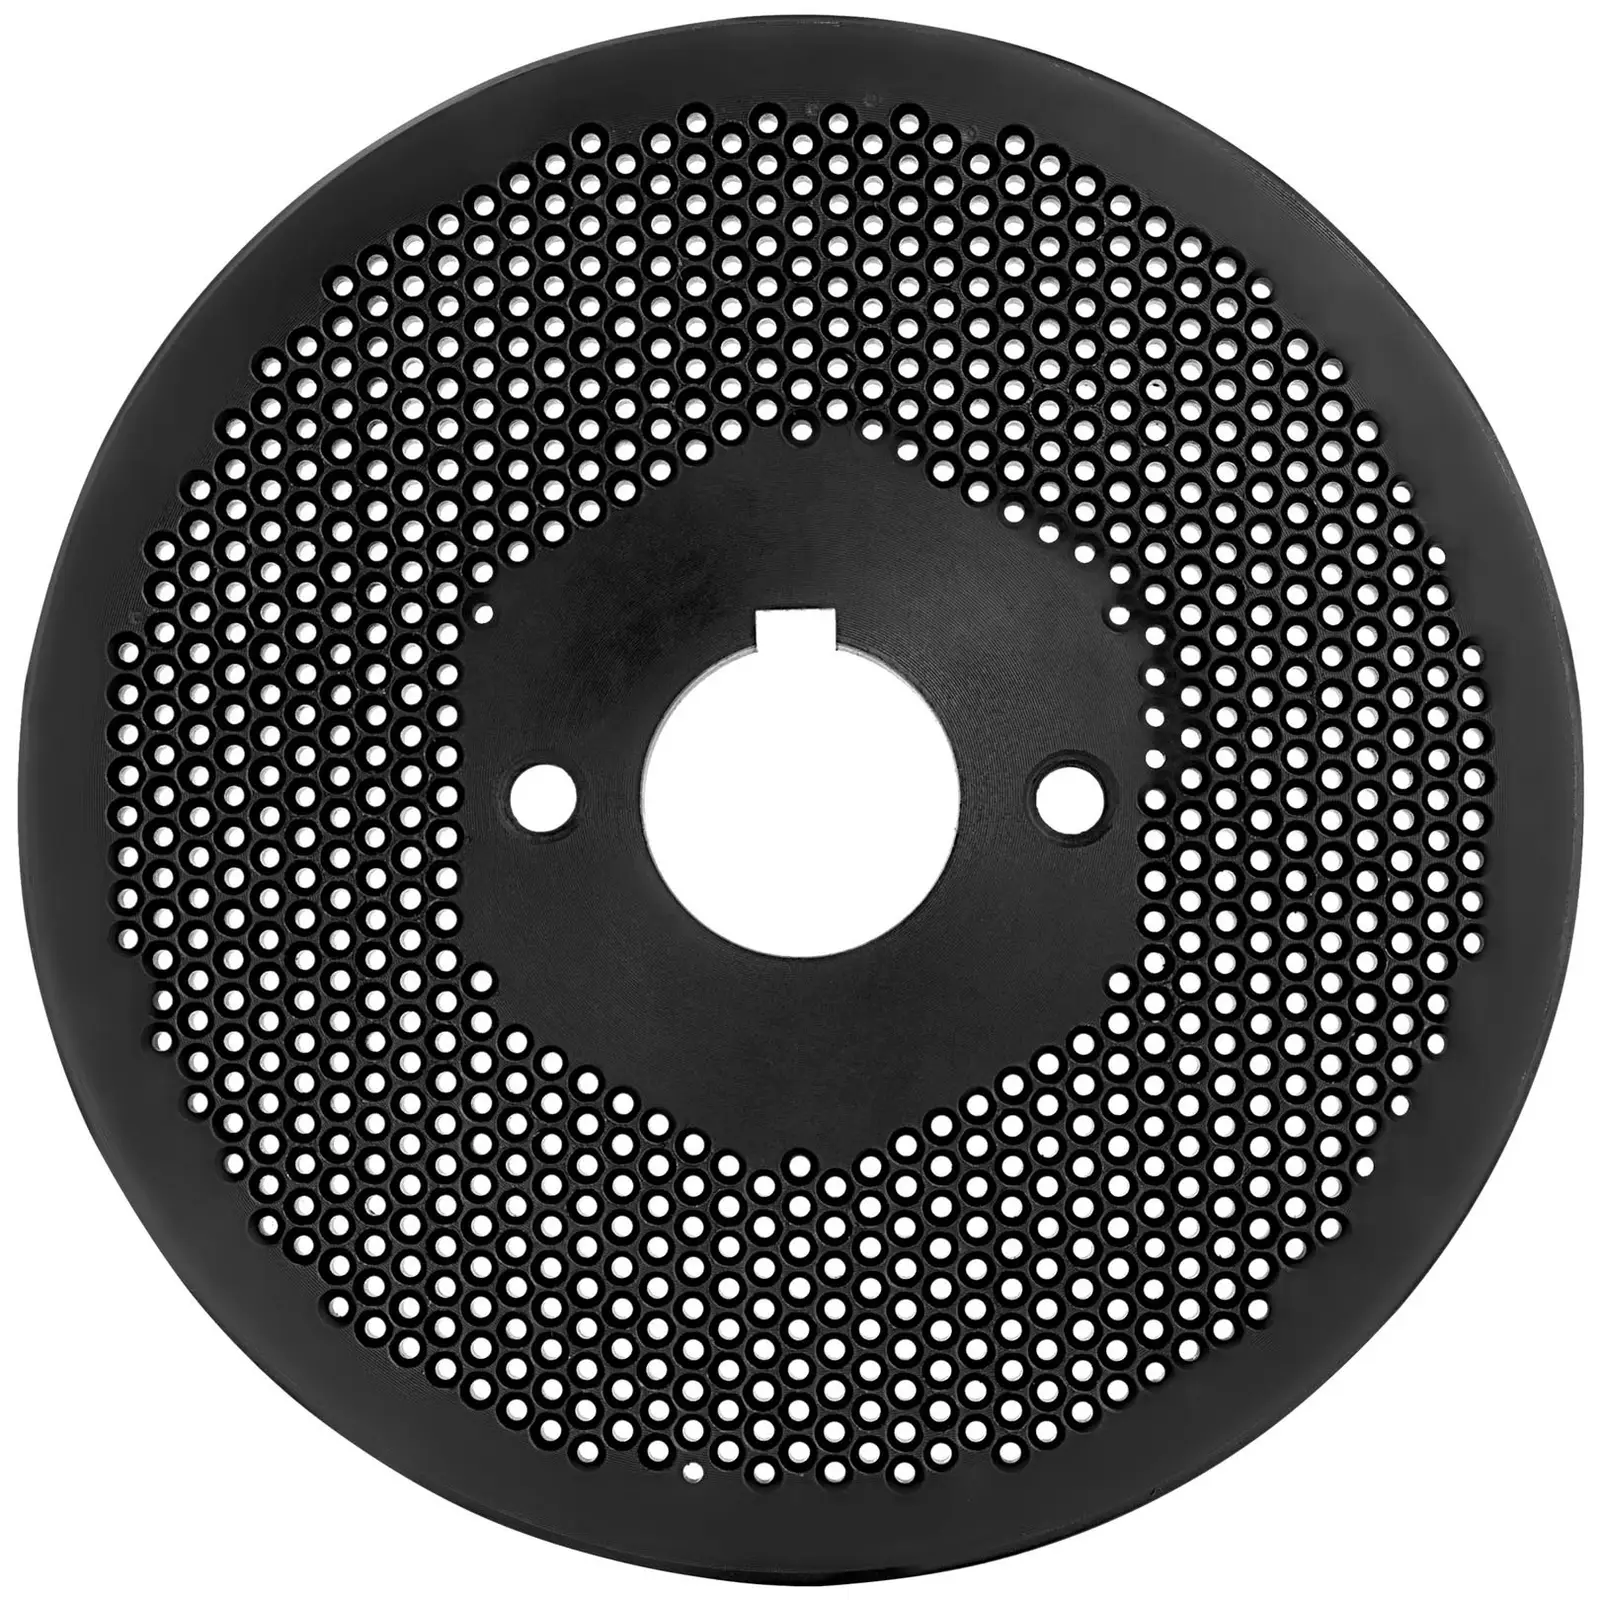 Matrise til pelletsmaskin for WIE-PM-1000 (10280041) – fôrpellets: 27 x Ø200 mm i diameter